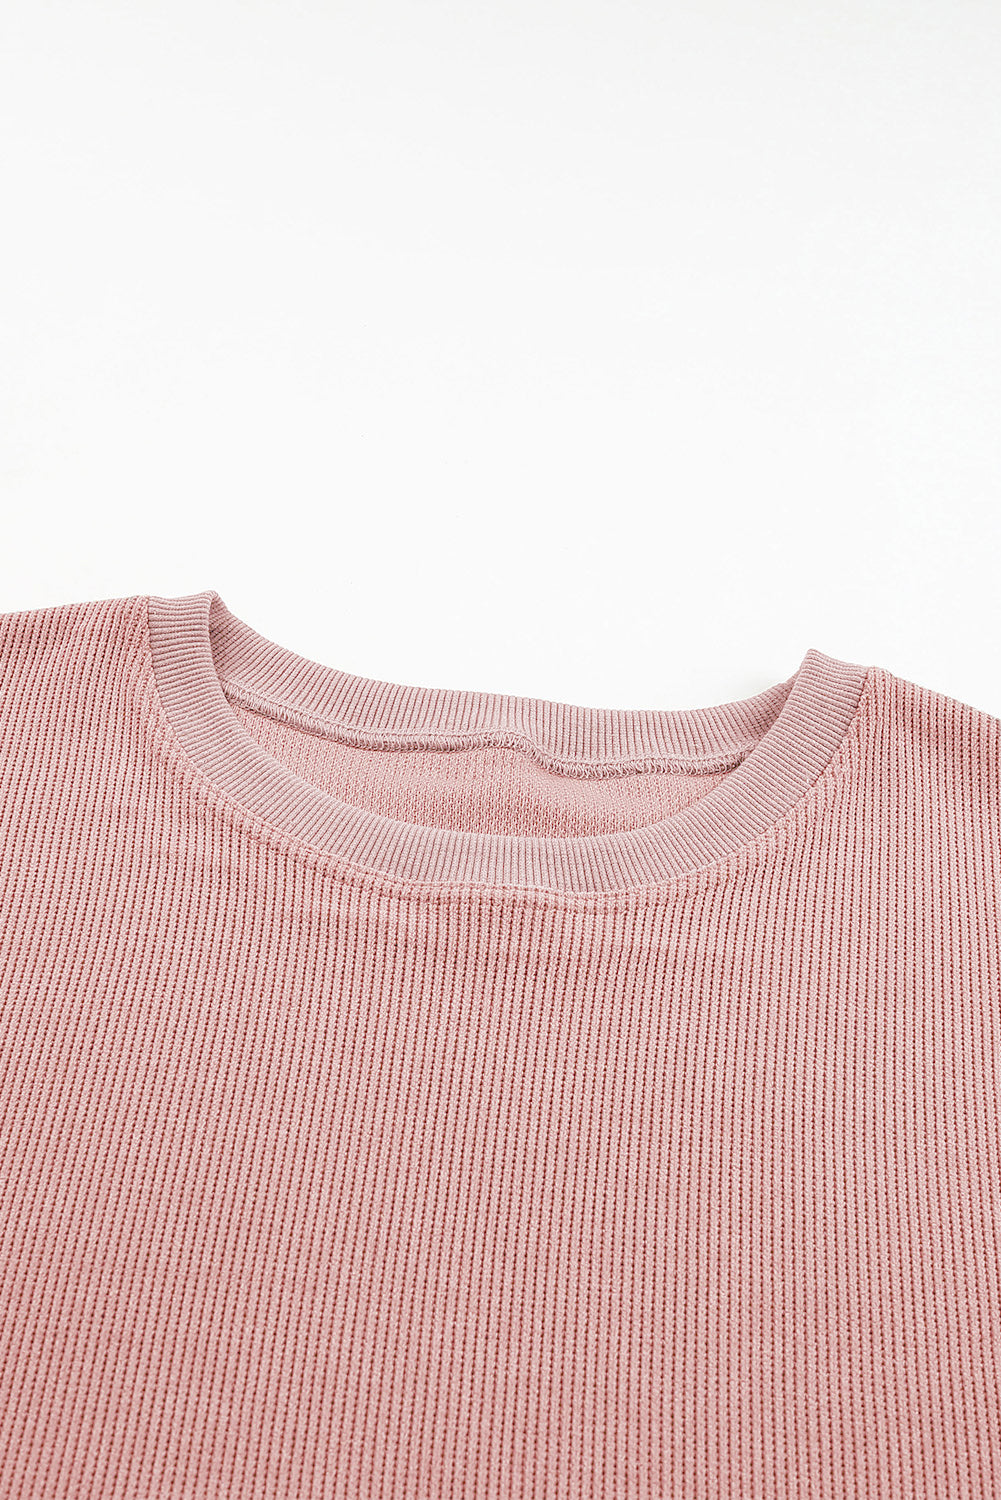 Ružičasta majica s okruglim izrezom na užetu veće veličine